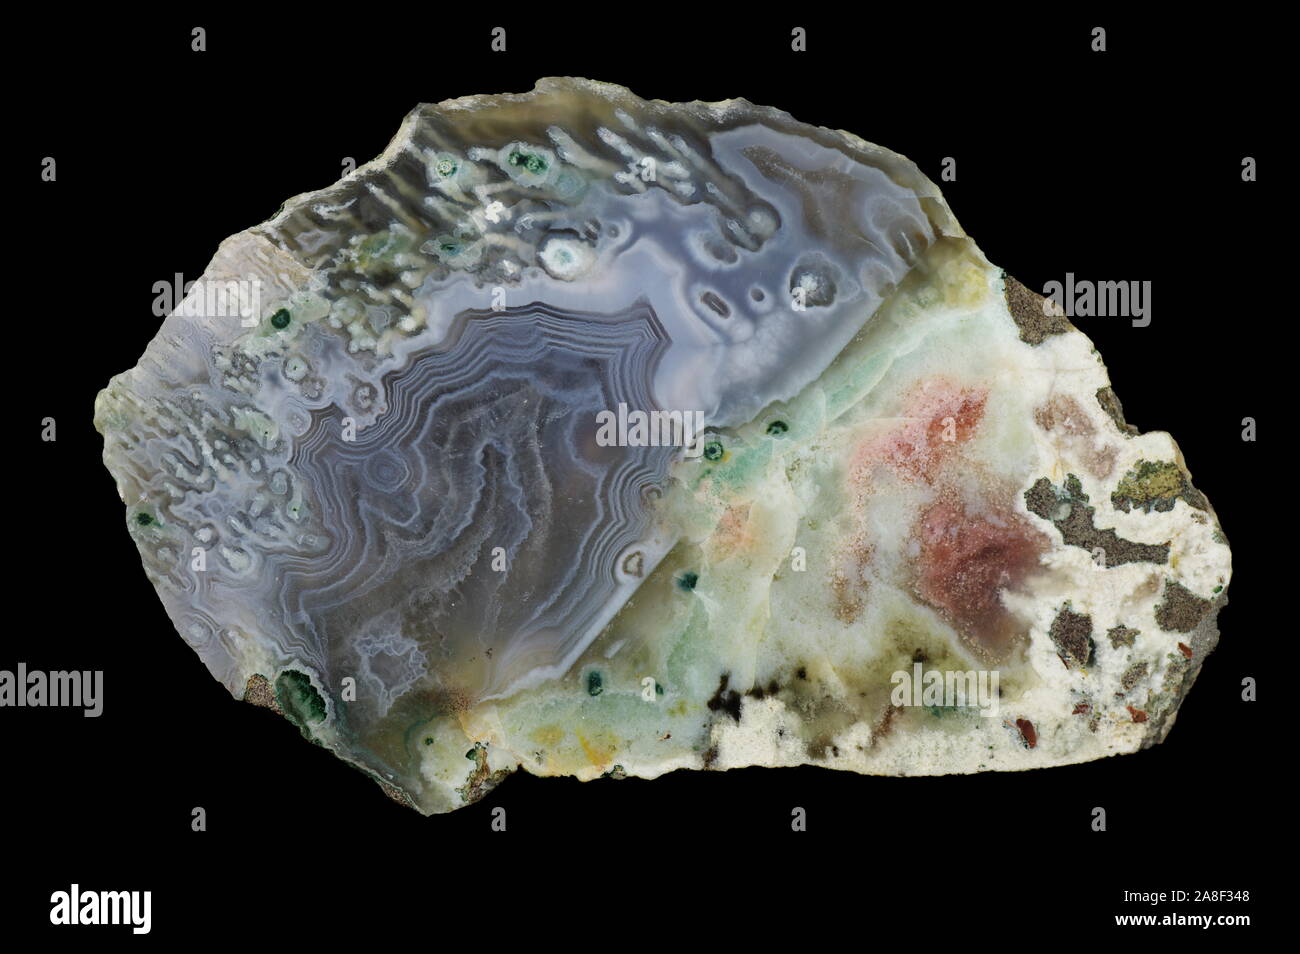 L'agate, la macro photographie de la surface de la coupe. Bandes de silice multicolores coloré avec des oxydes métalliques sont visibles. Origine : Rudno près de Cracovie, Polan Banque D'Images